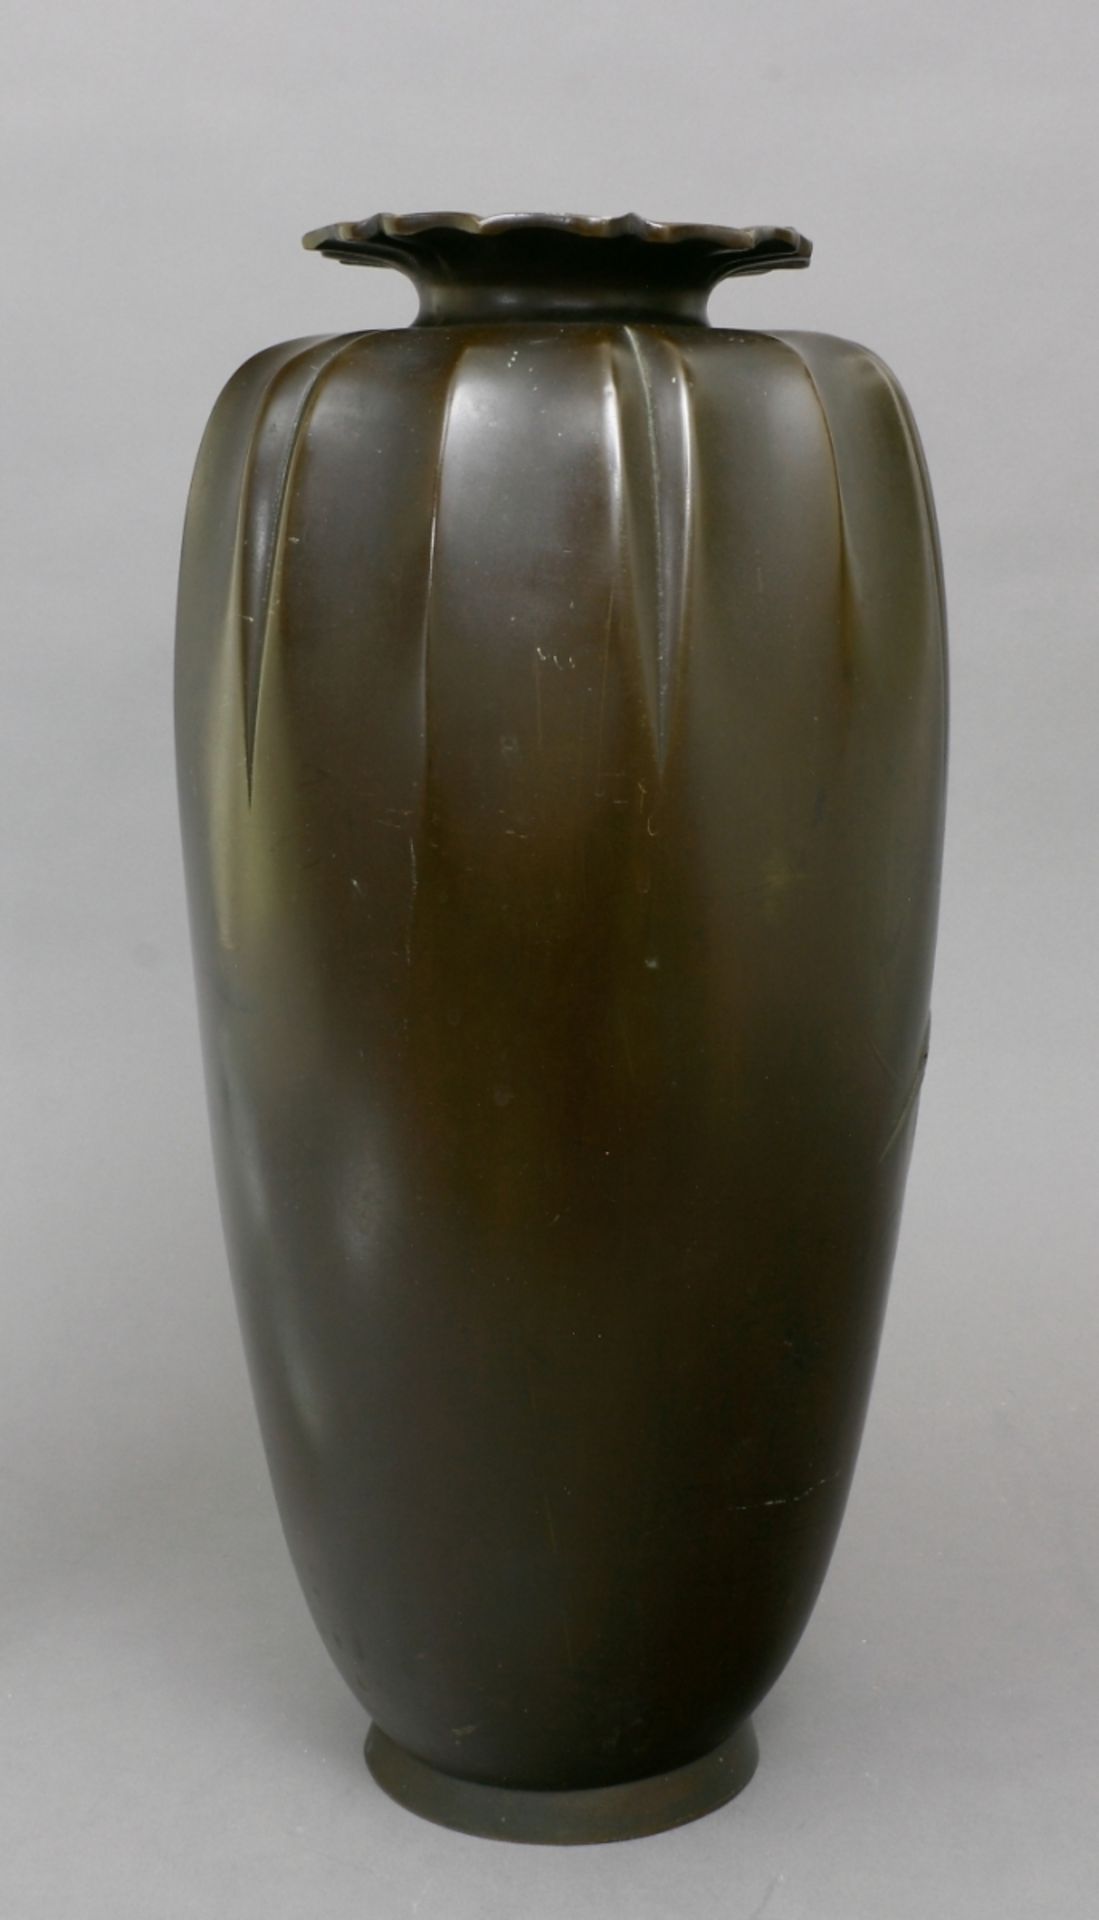 Japan, Vase, Bronze, spätes 19. Jh. - Image 2 of 3